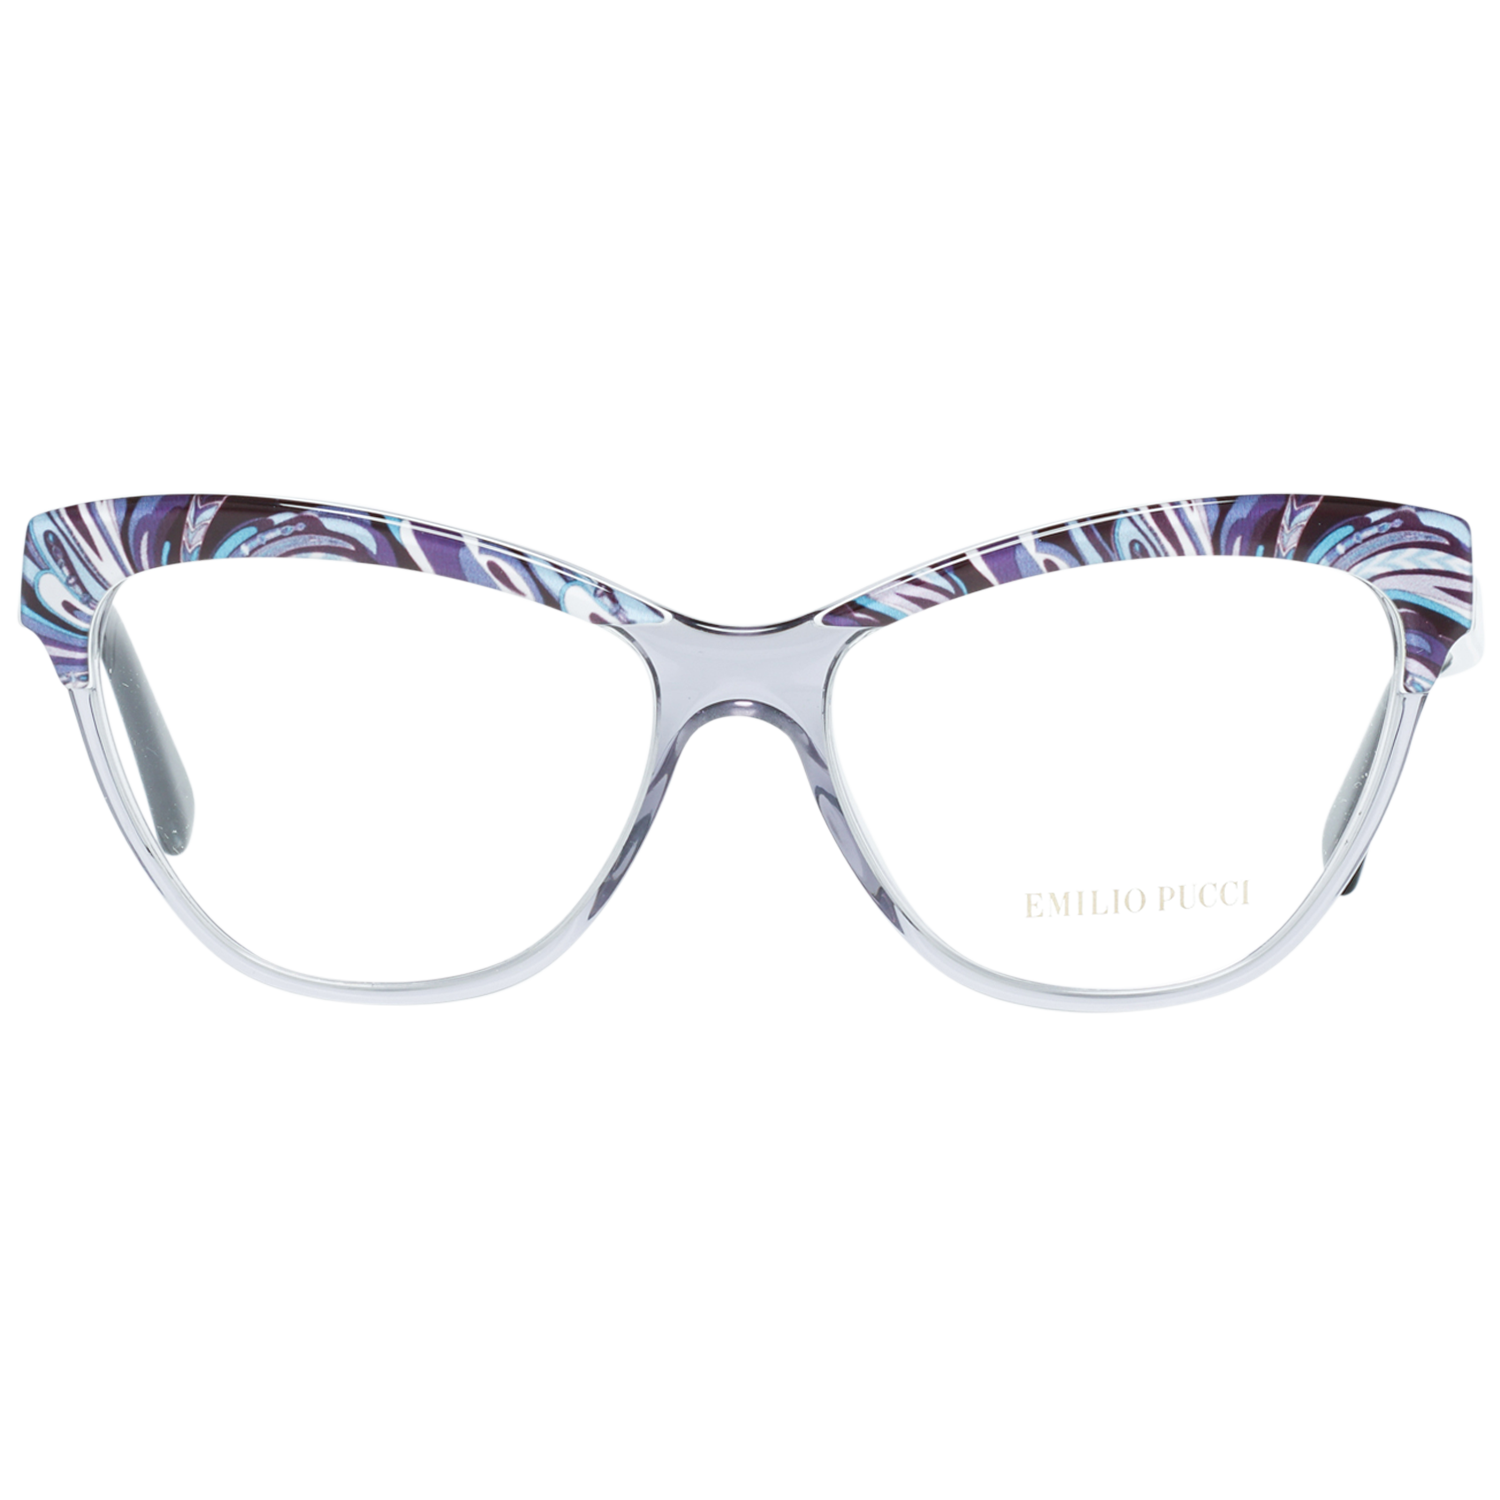 Emilio Pucci Frames Emilio Pucci Optical Frame EP5020 020 55 Eyeglasses Eyewear UK USA Australia 